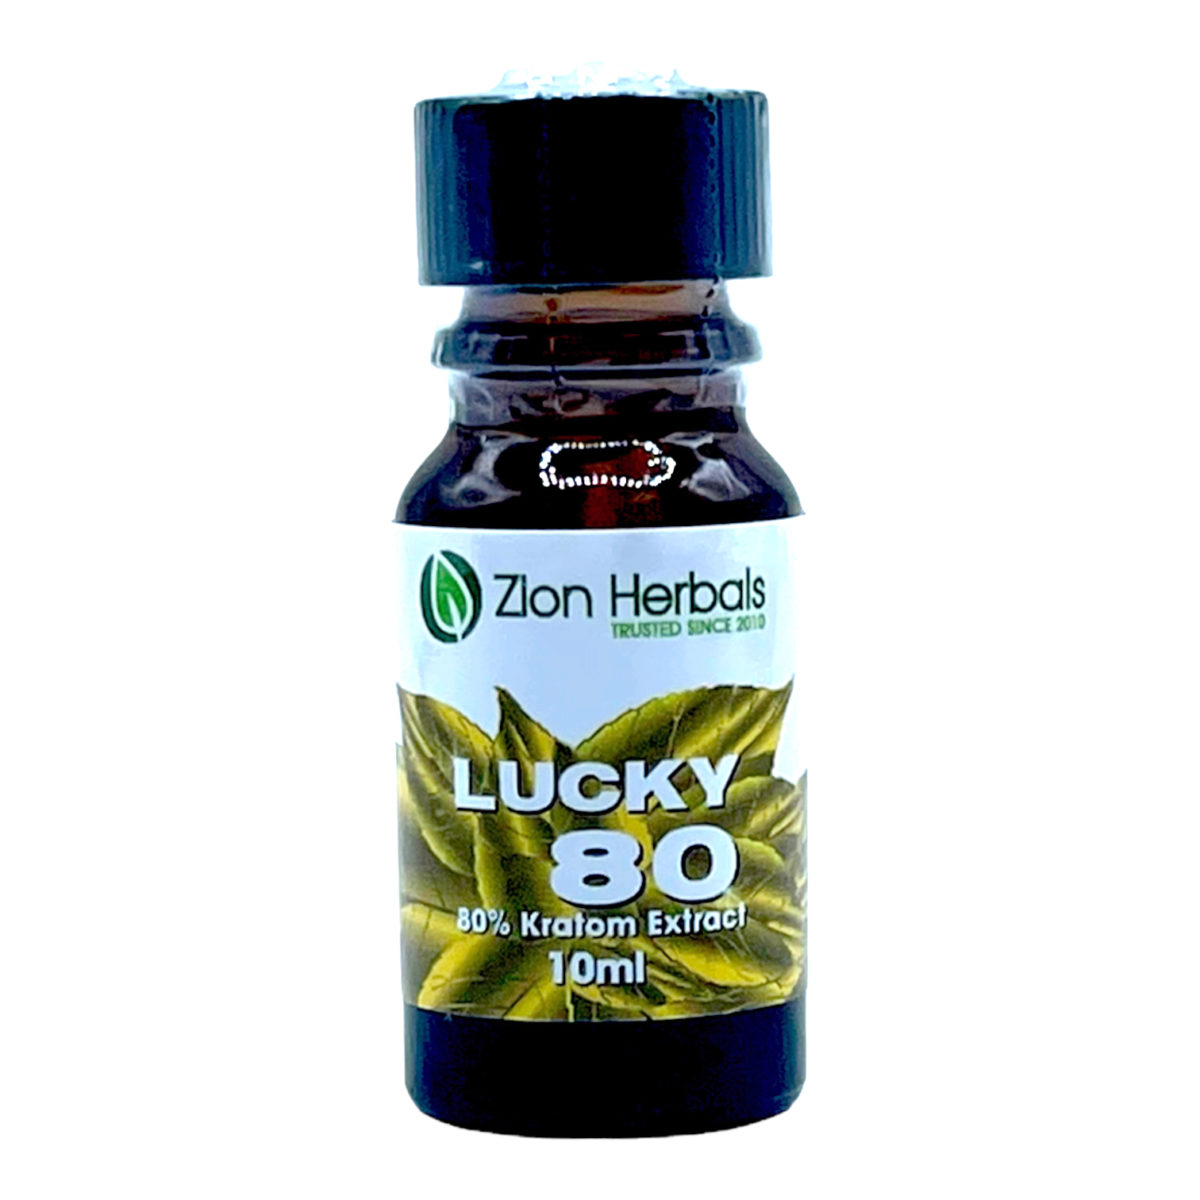 Zion Herbals Lucky 80 Kratom Extract Shot – 10ml